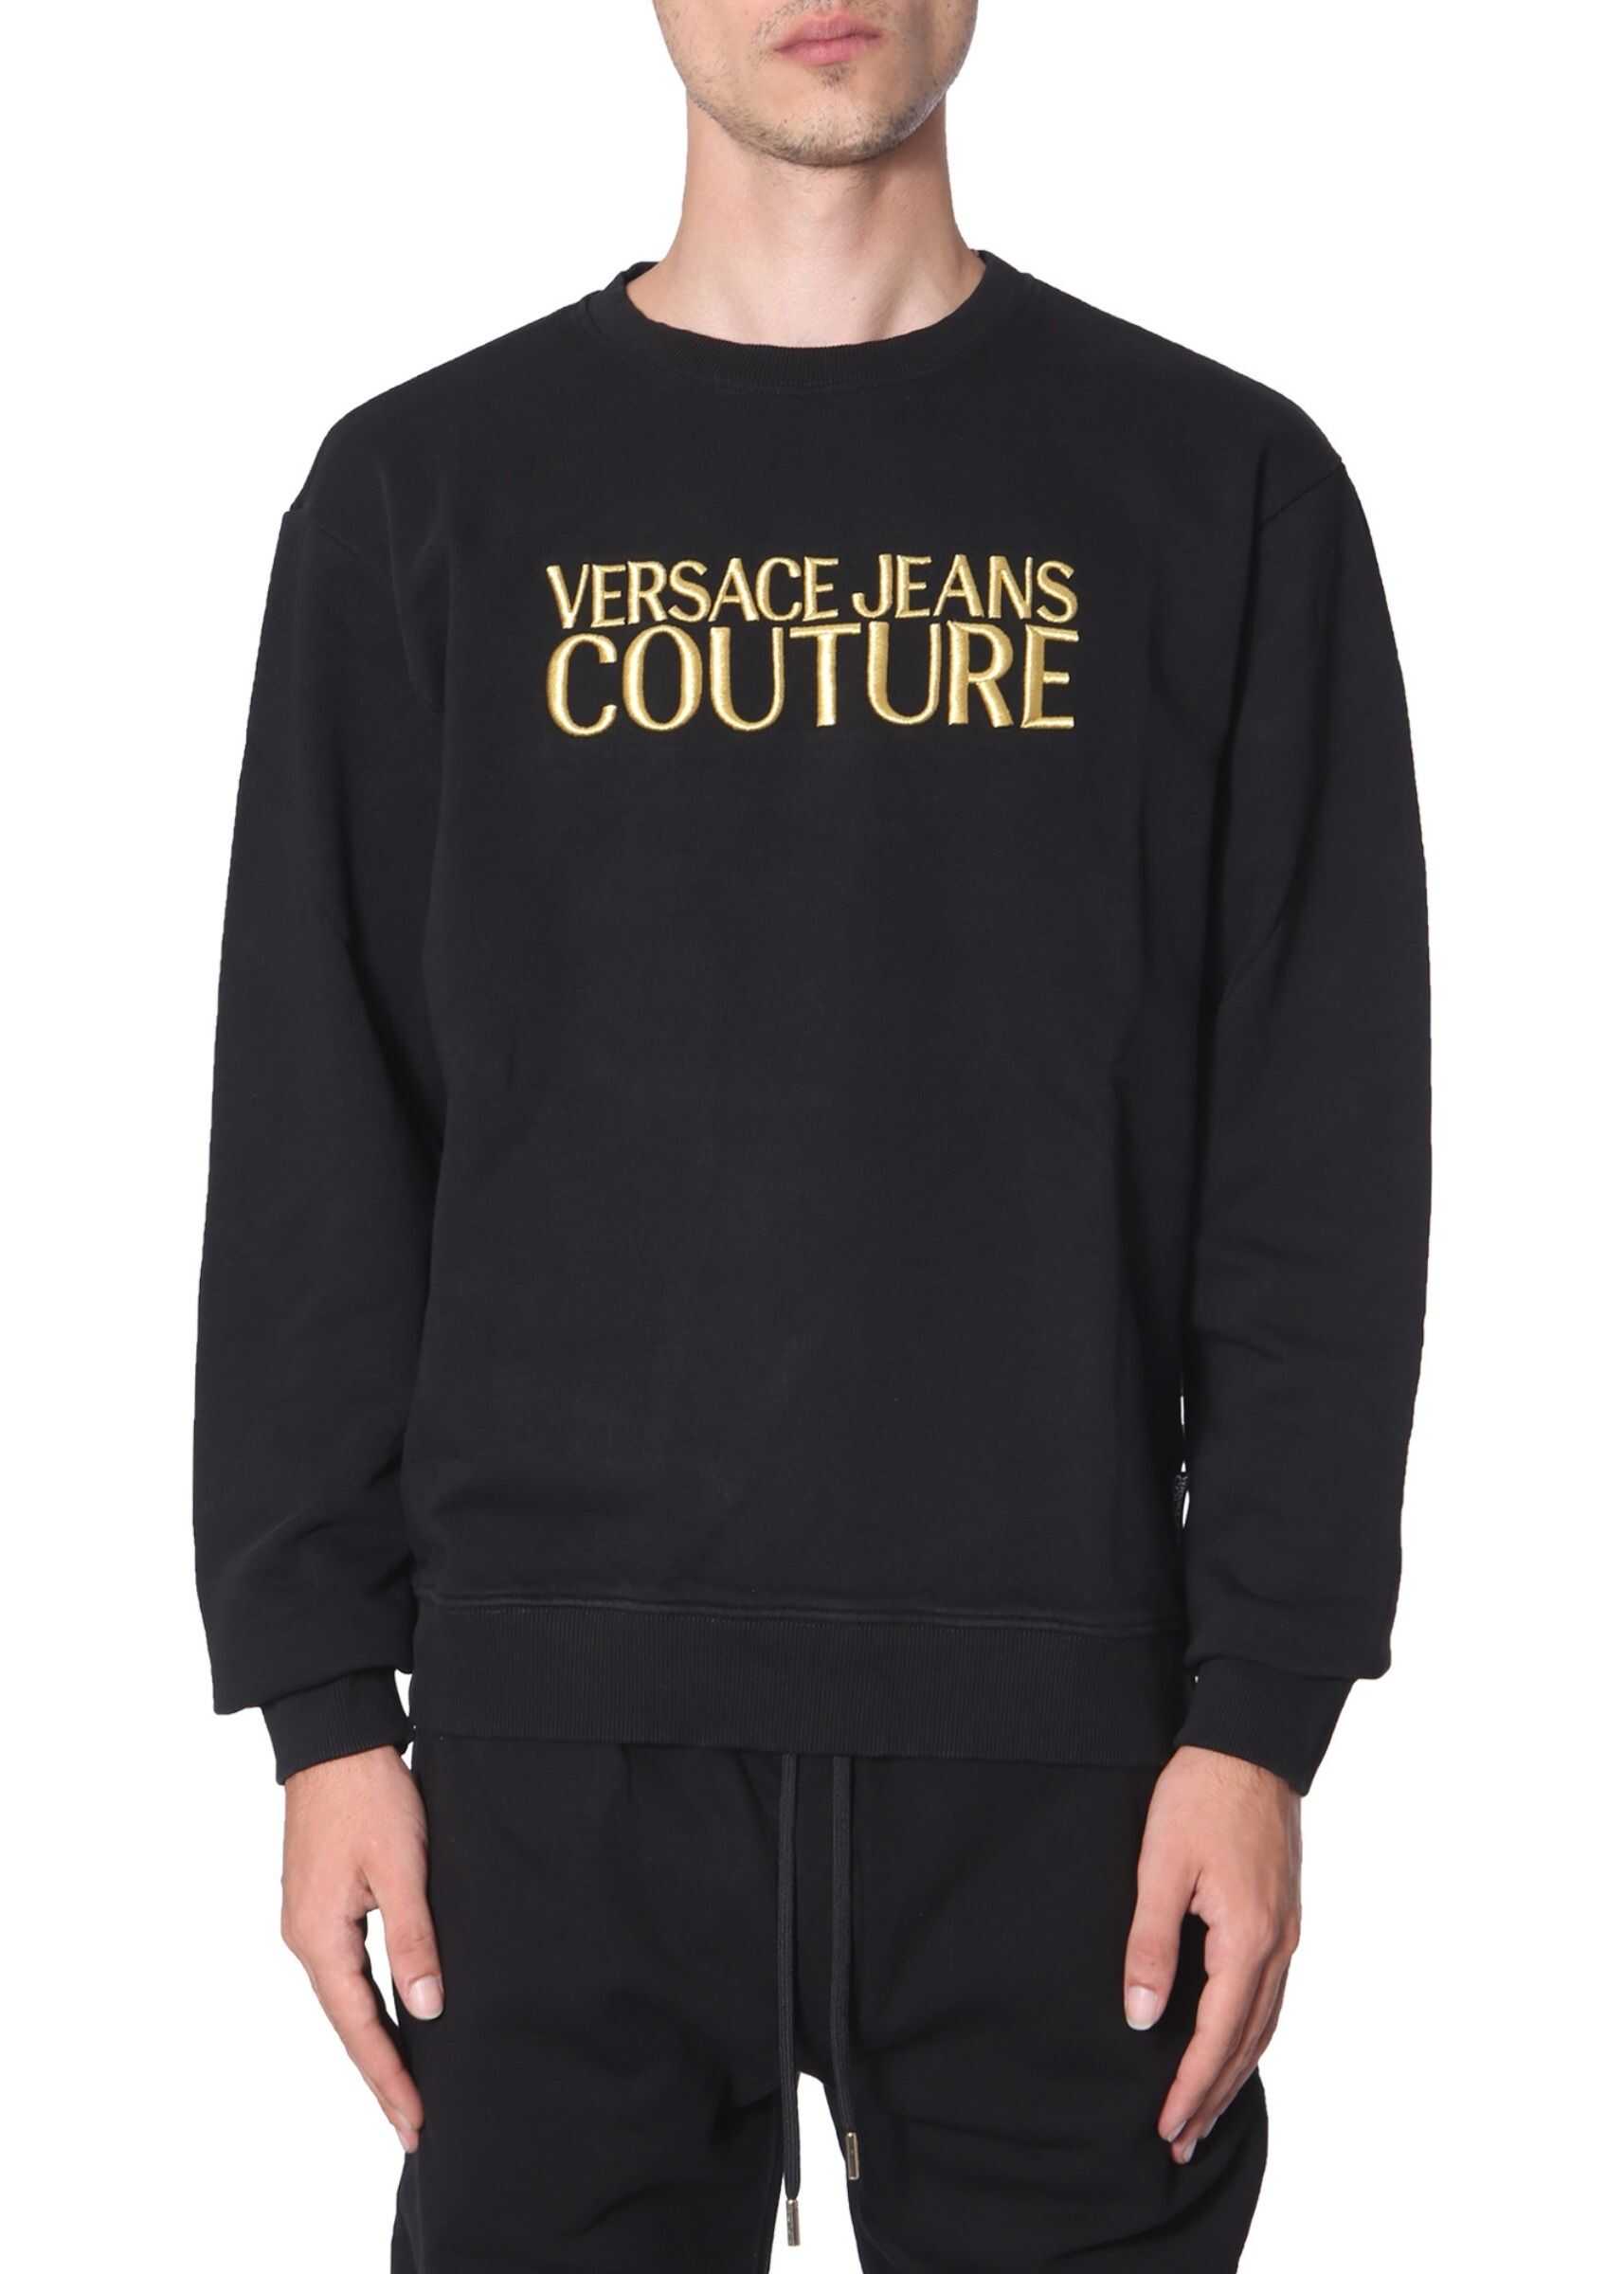 Versace Jeans Couture Crew Neck Sweatshirt BLACK